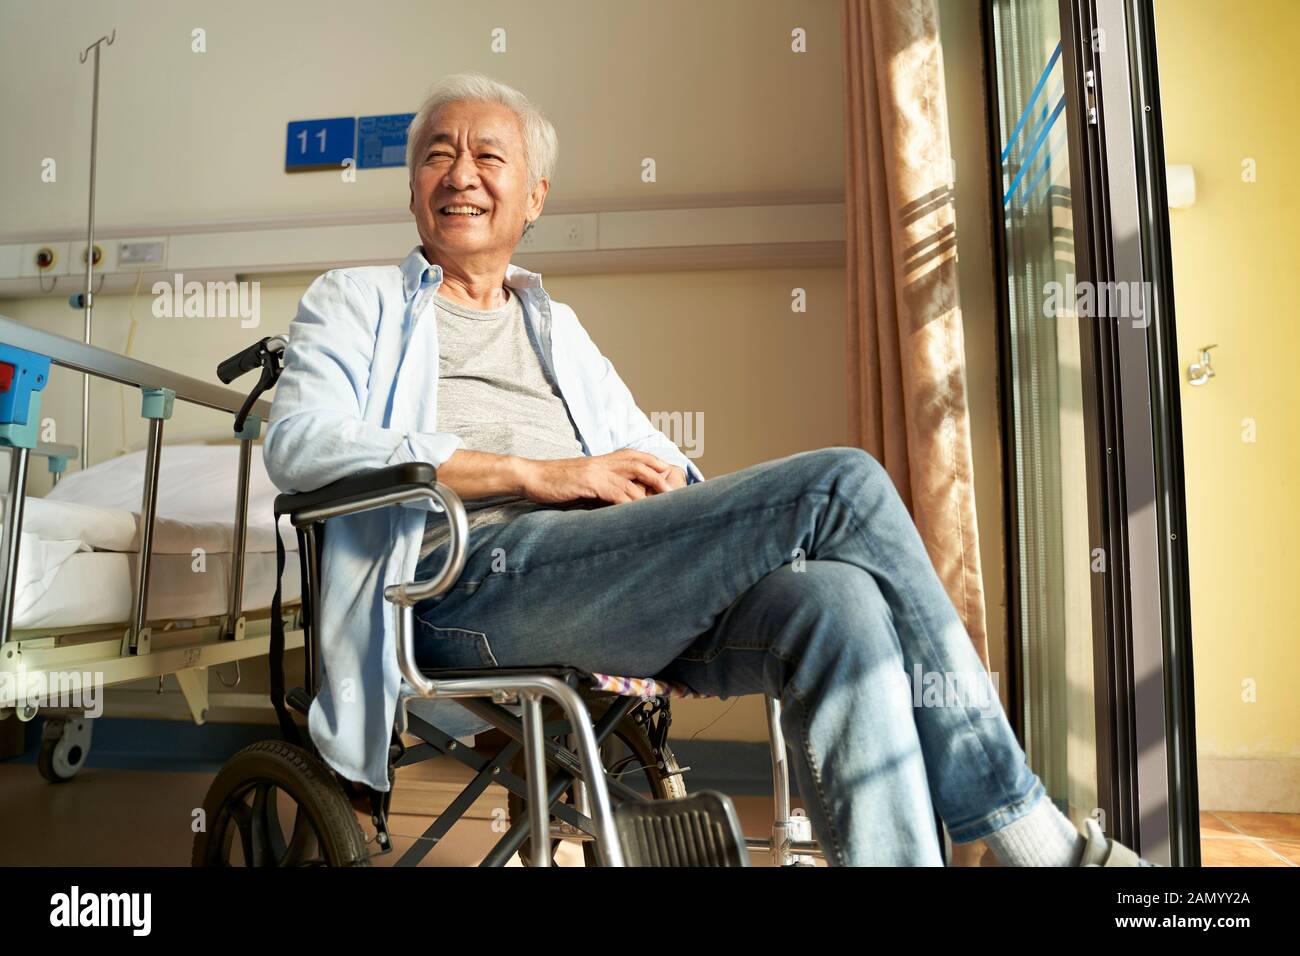 un vieil homme asiatique assis dans une chaise roulante dans une maison de soins infirmiers ou un hôpital se réjouit et content Banque D'Images